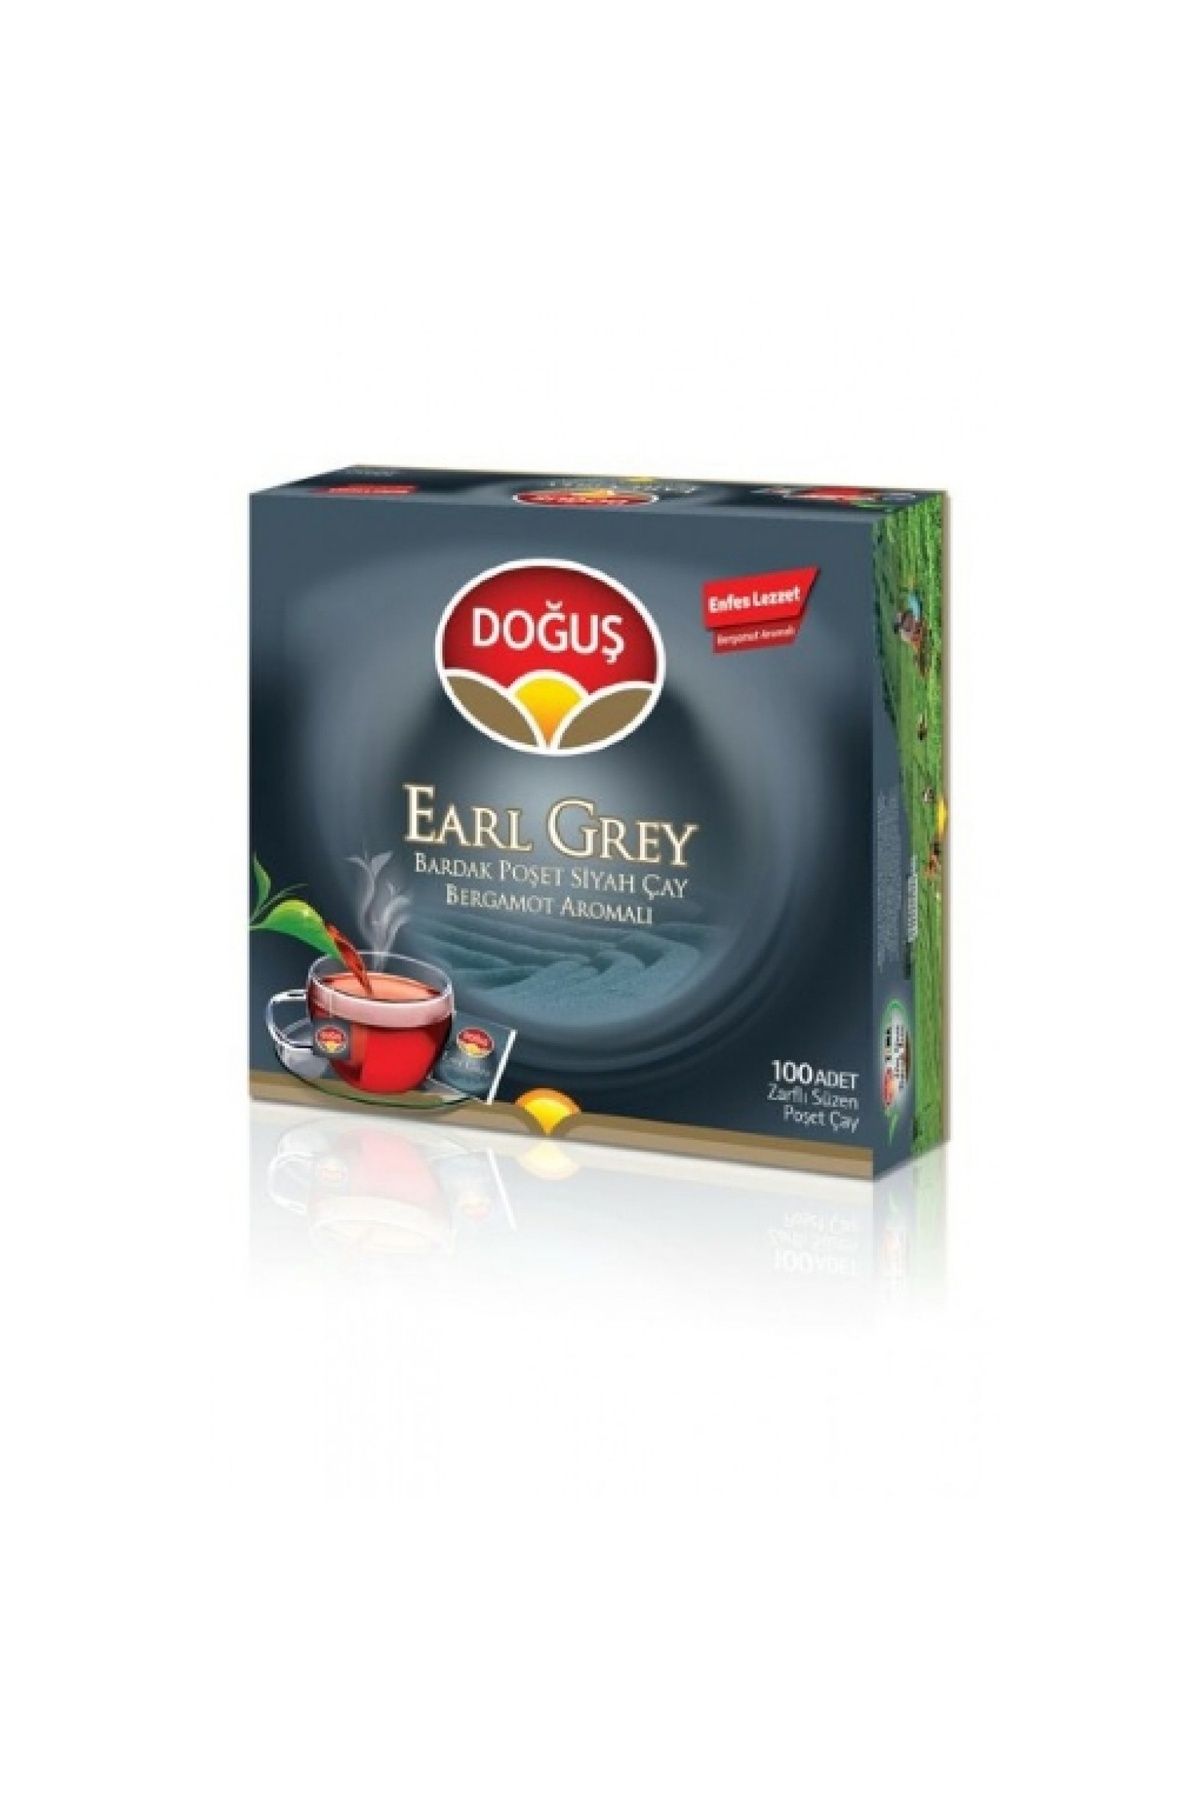 Doğuş Çay Doğuş Earl Grey Bardak Çay 100'lü 200 Gr. (12'Lİ)